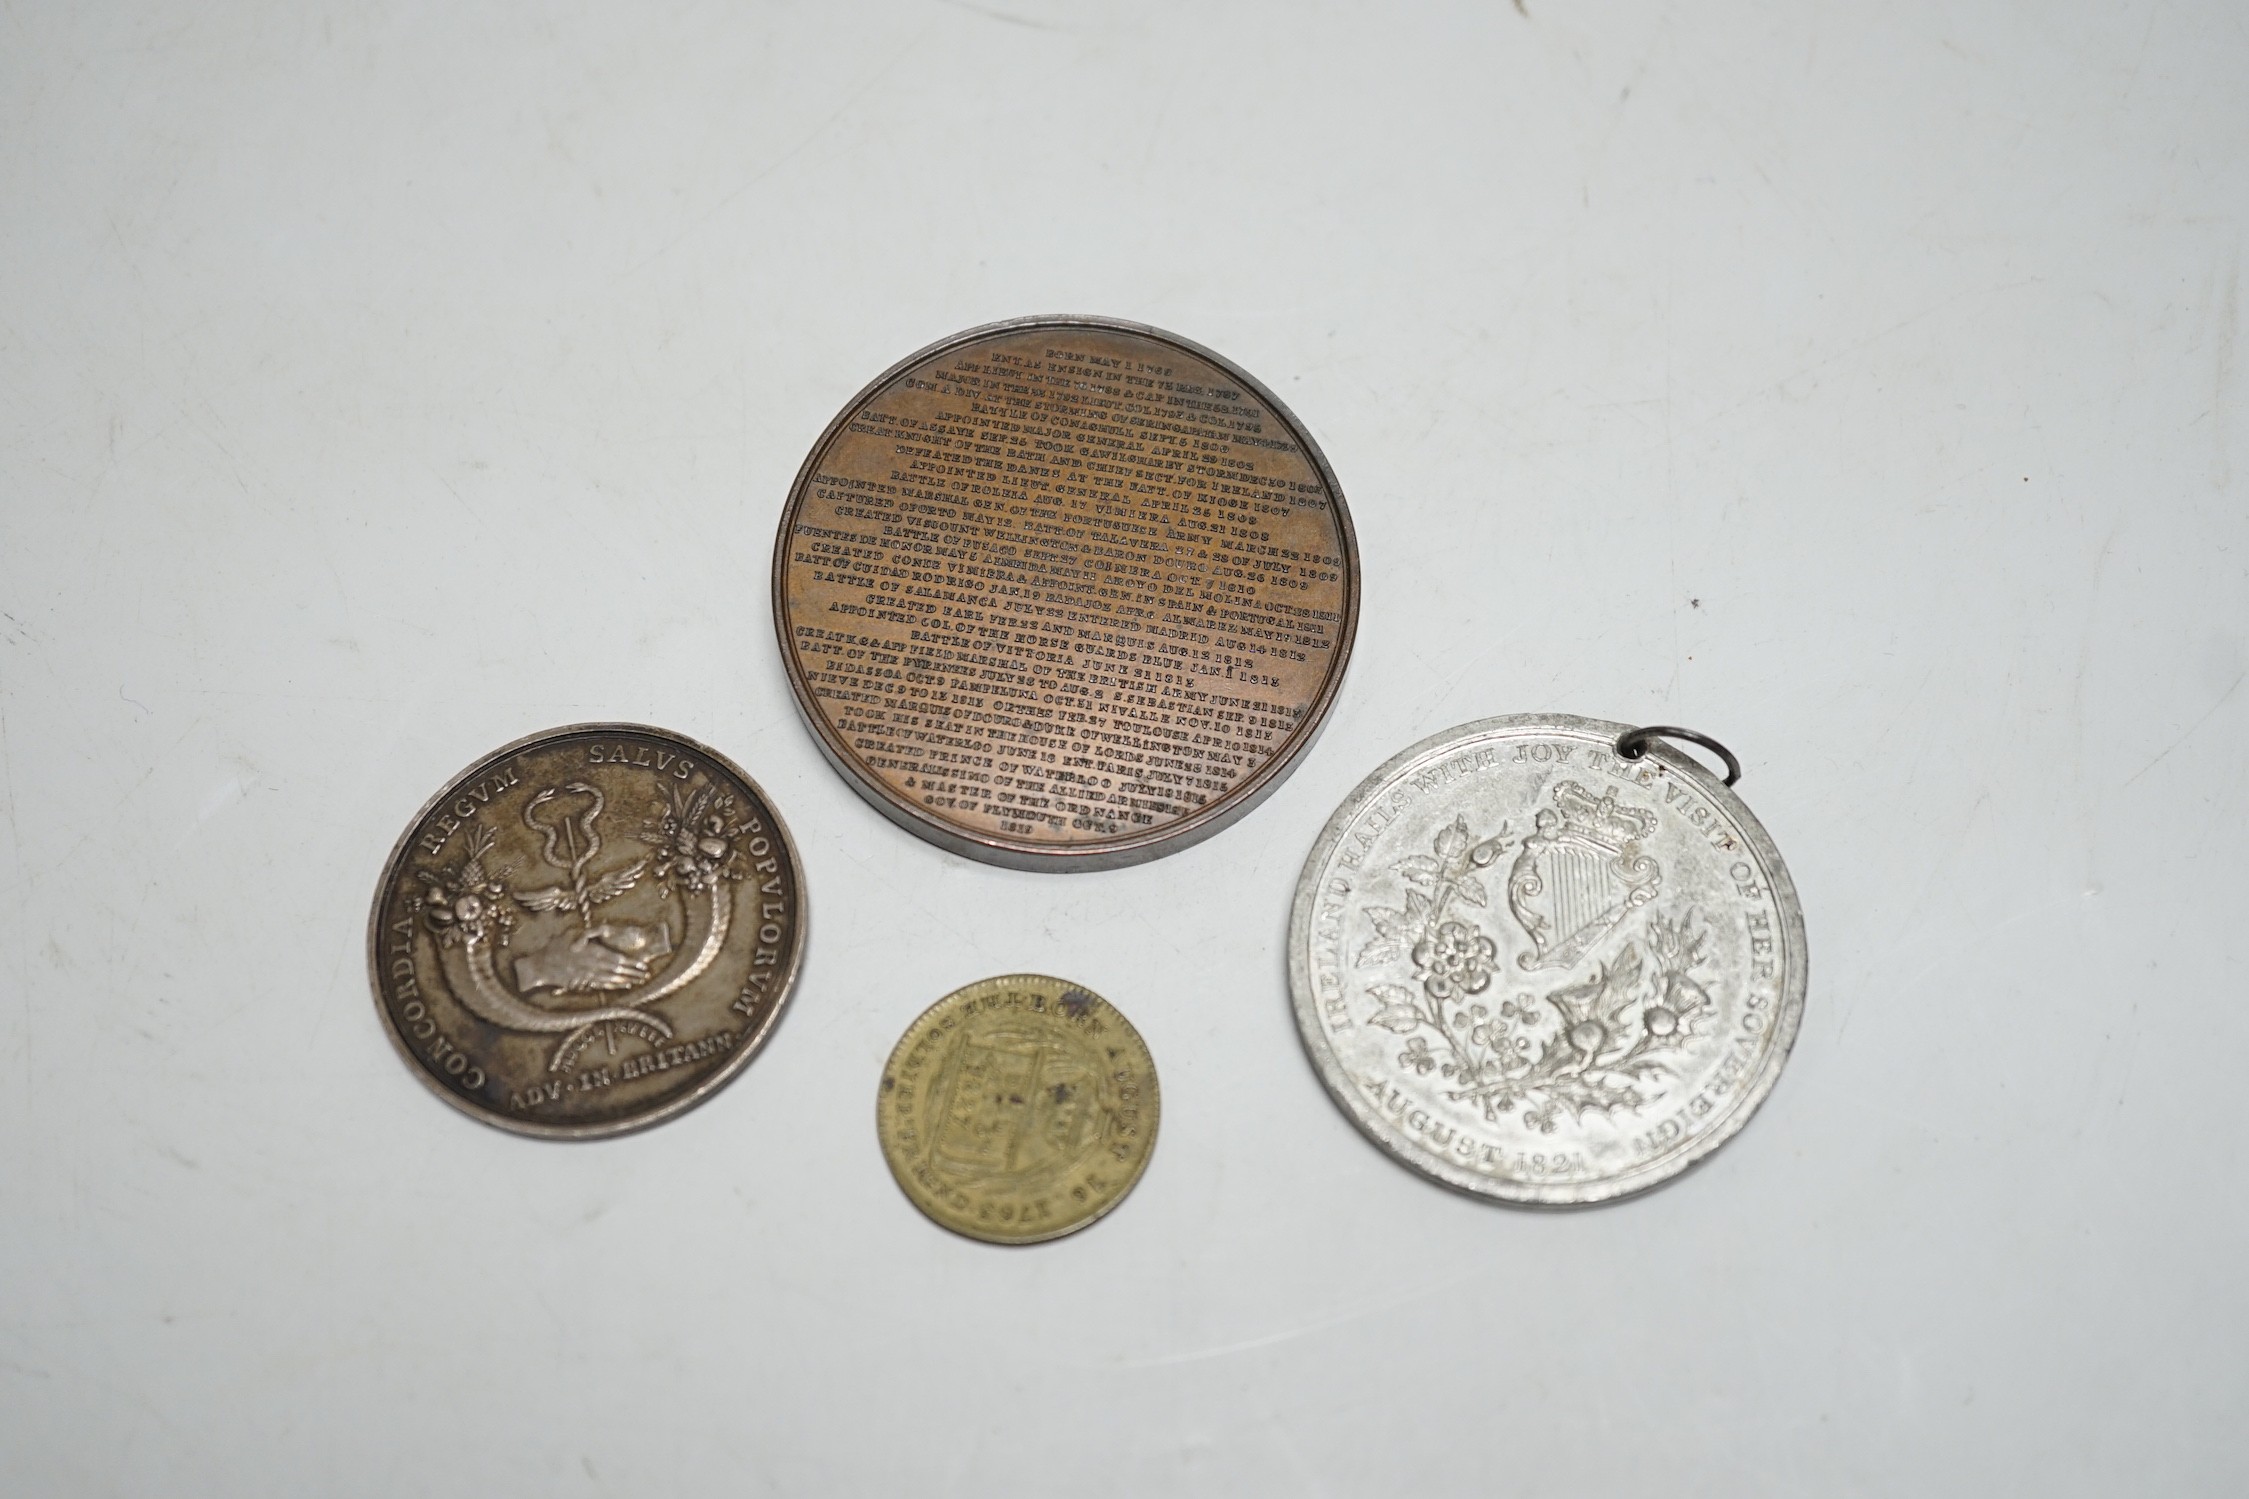 Four 18th/19th century British commemorative medals –